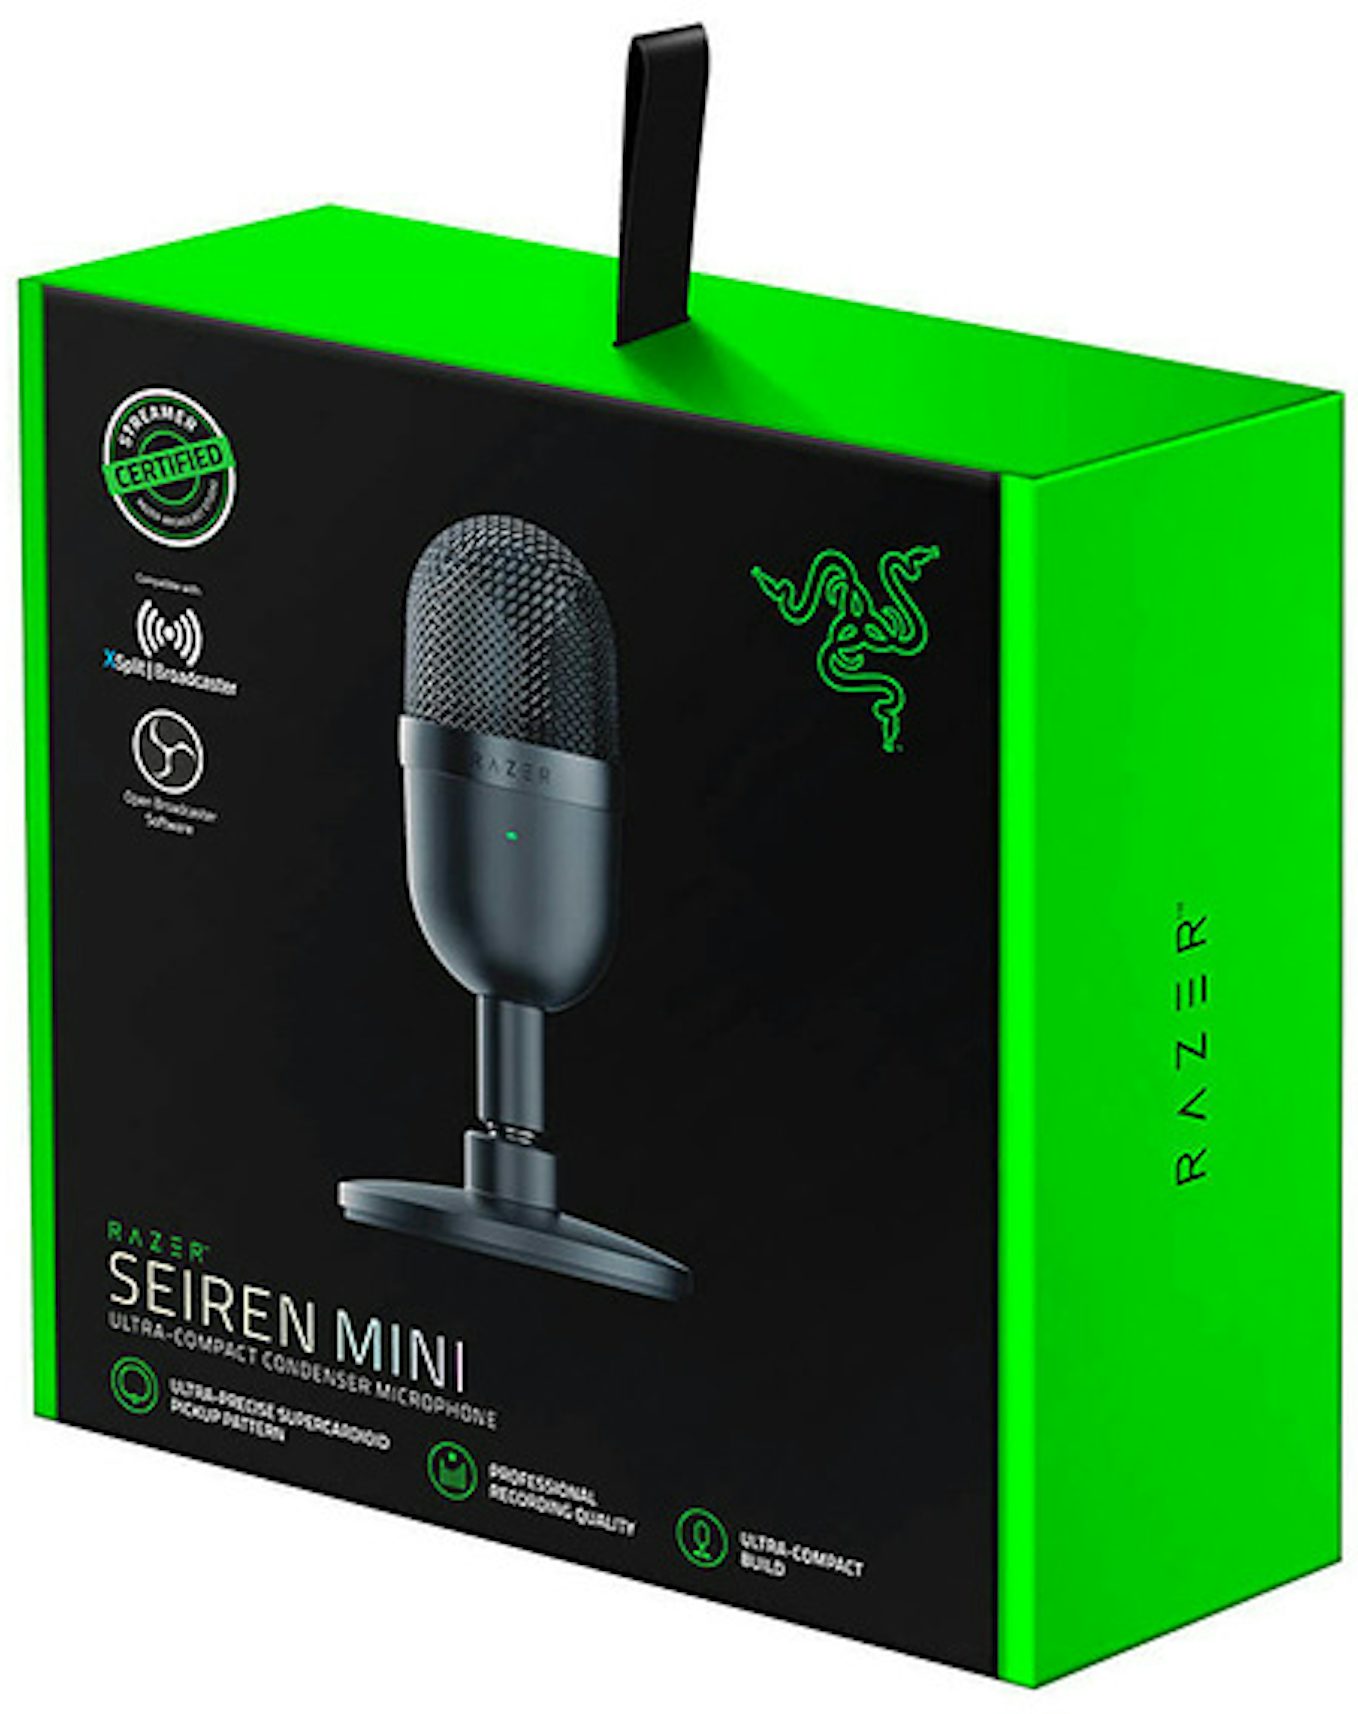 Razer Seiren Mini - Microphone